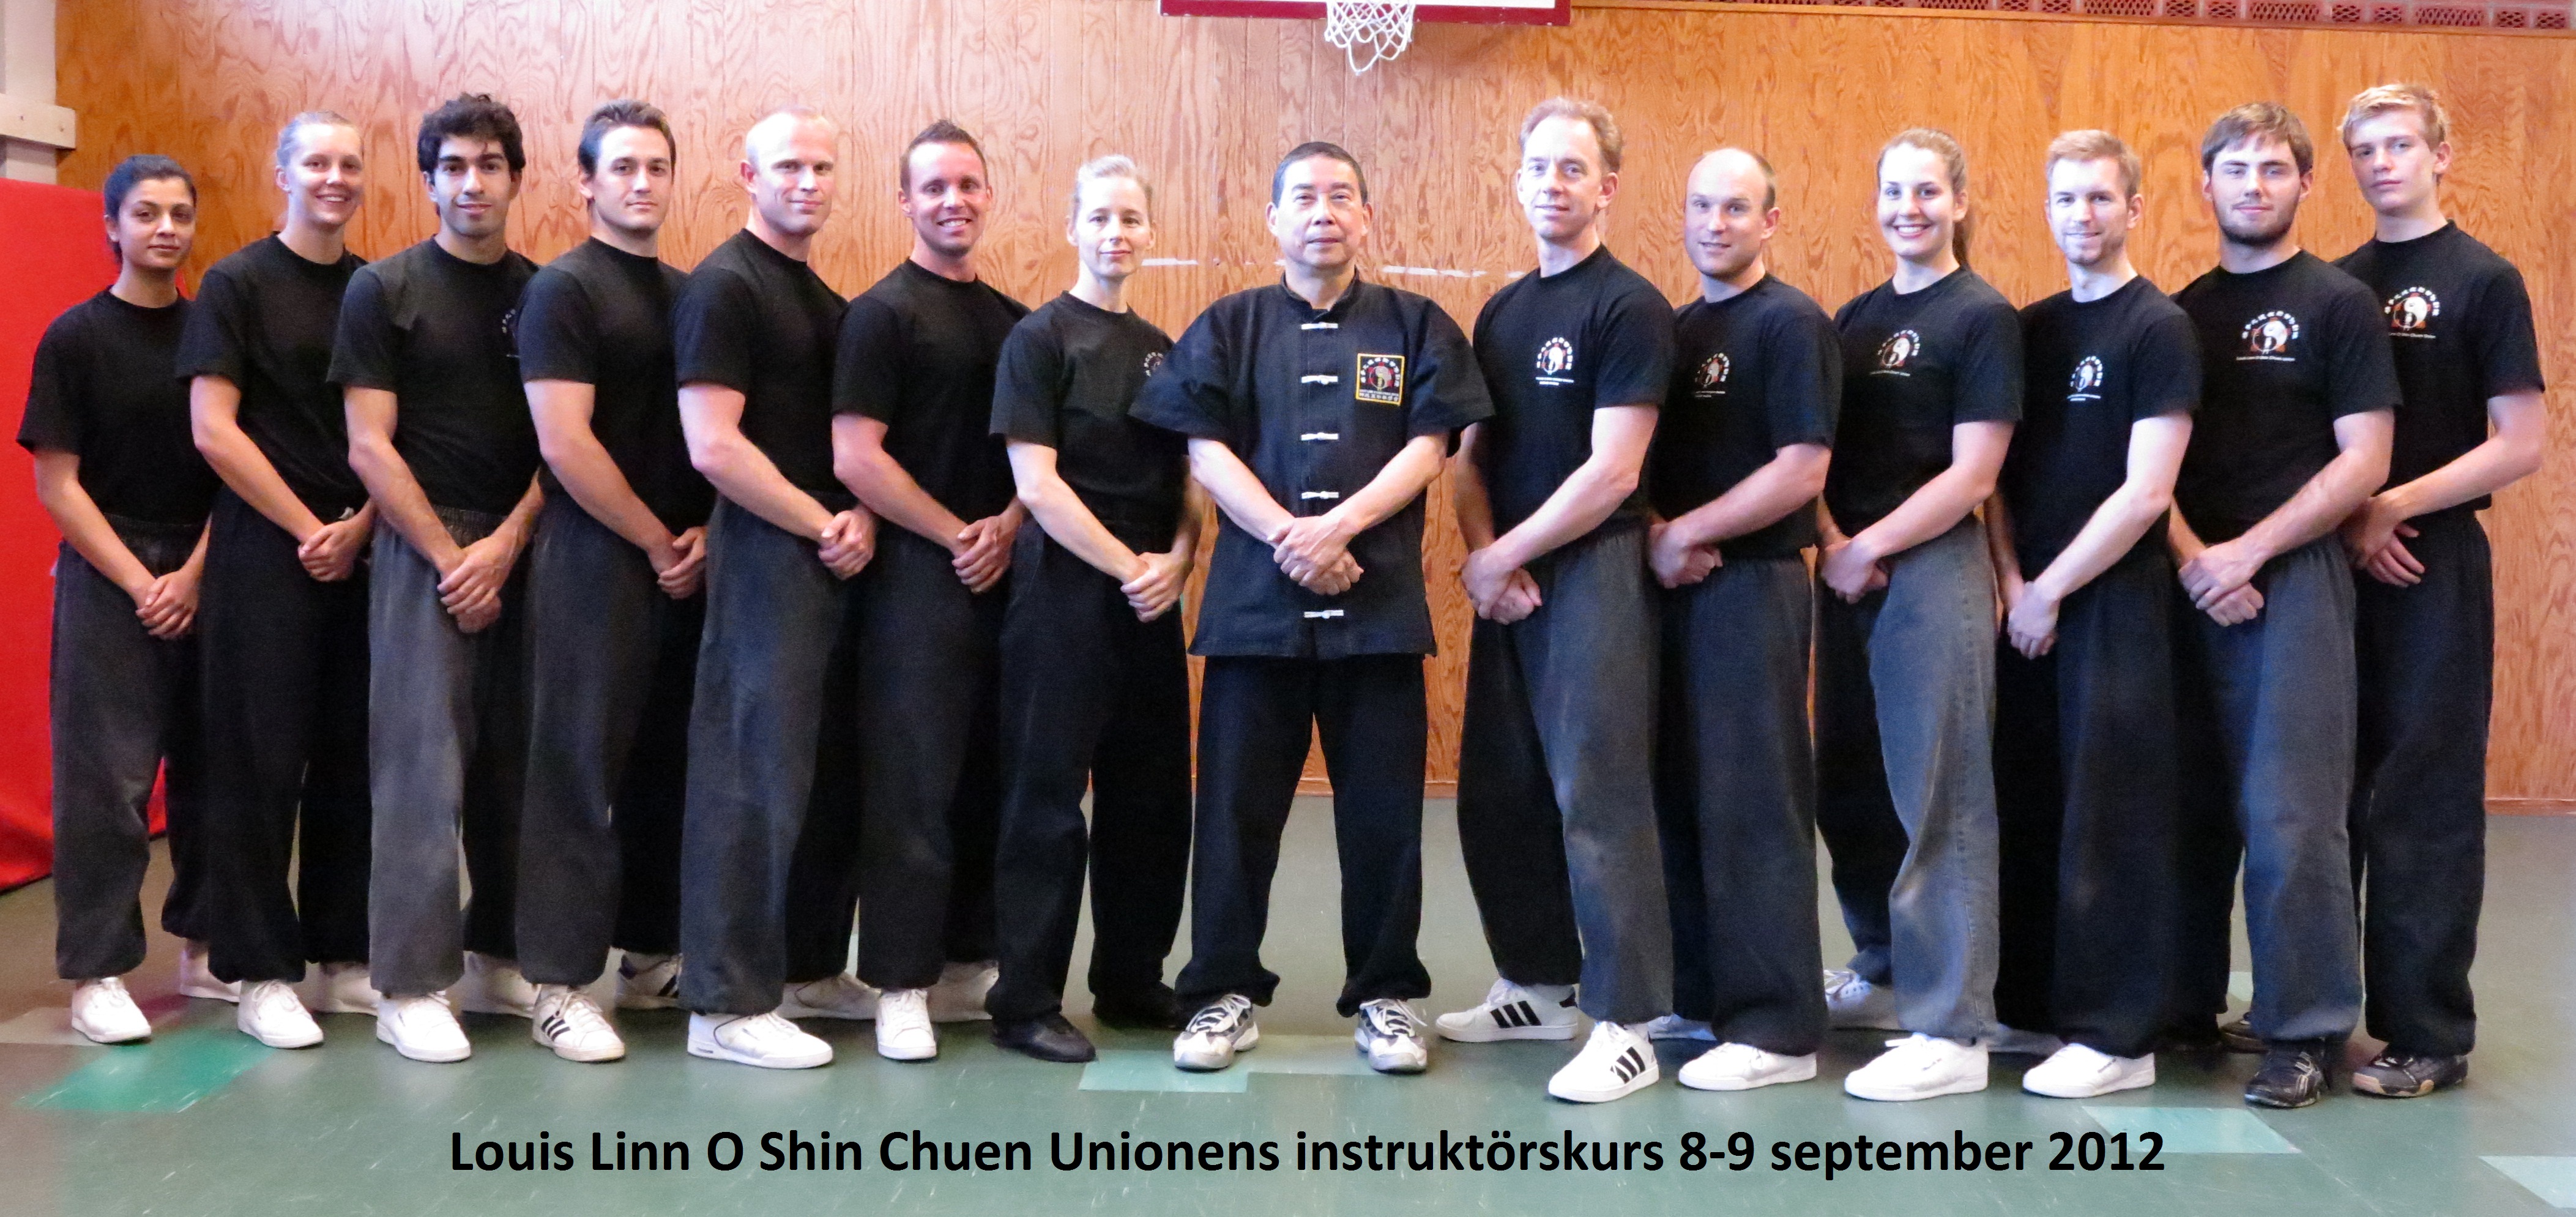 Louis Linn O Shin Chuen Unionens instruktörer hösten 2012